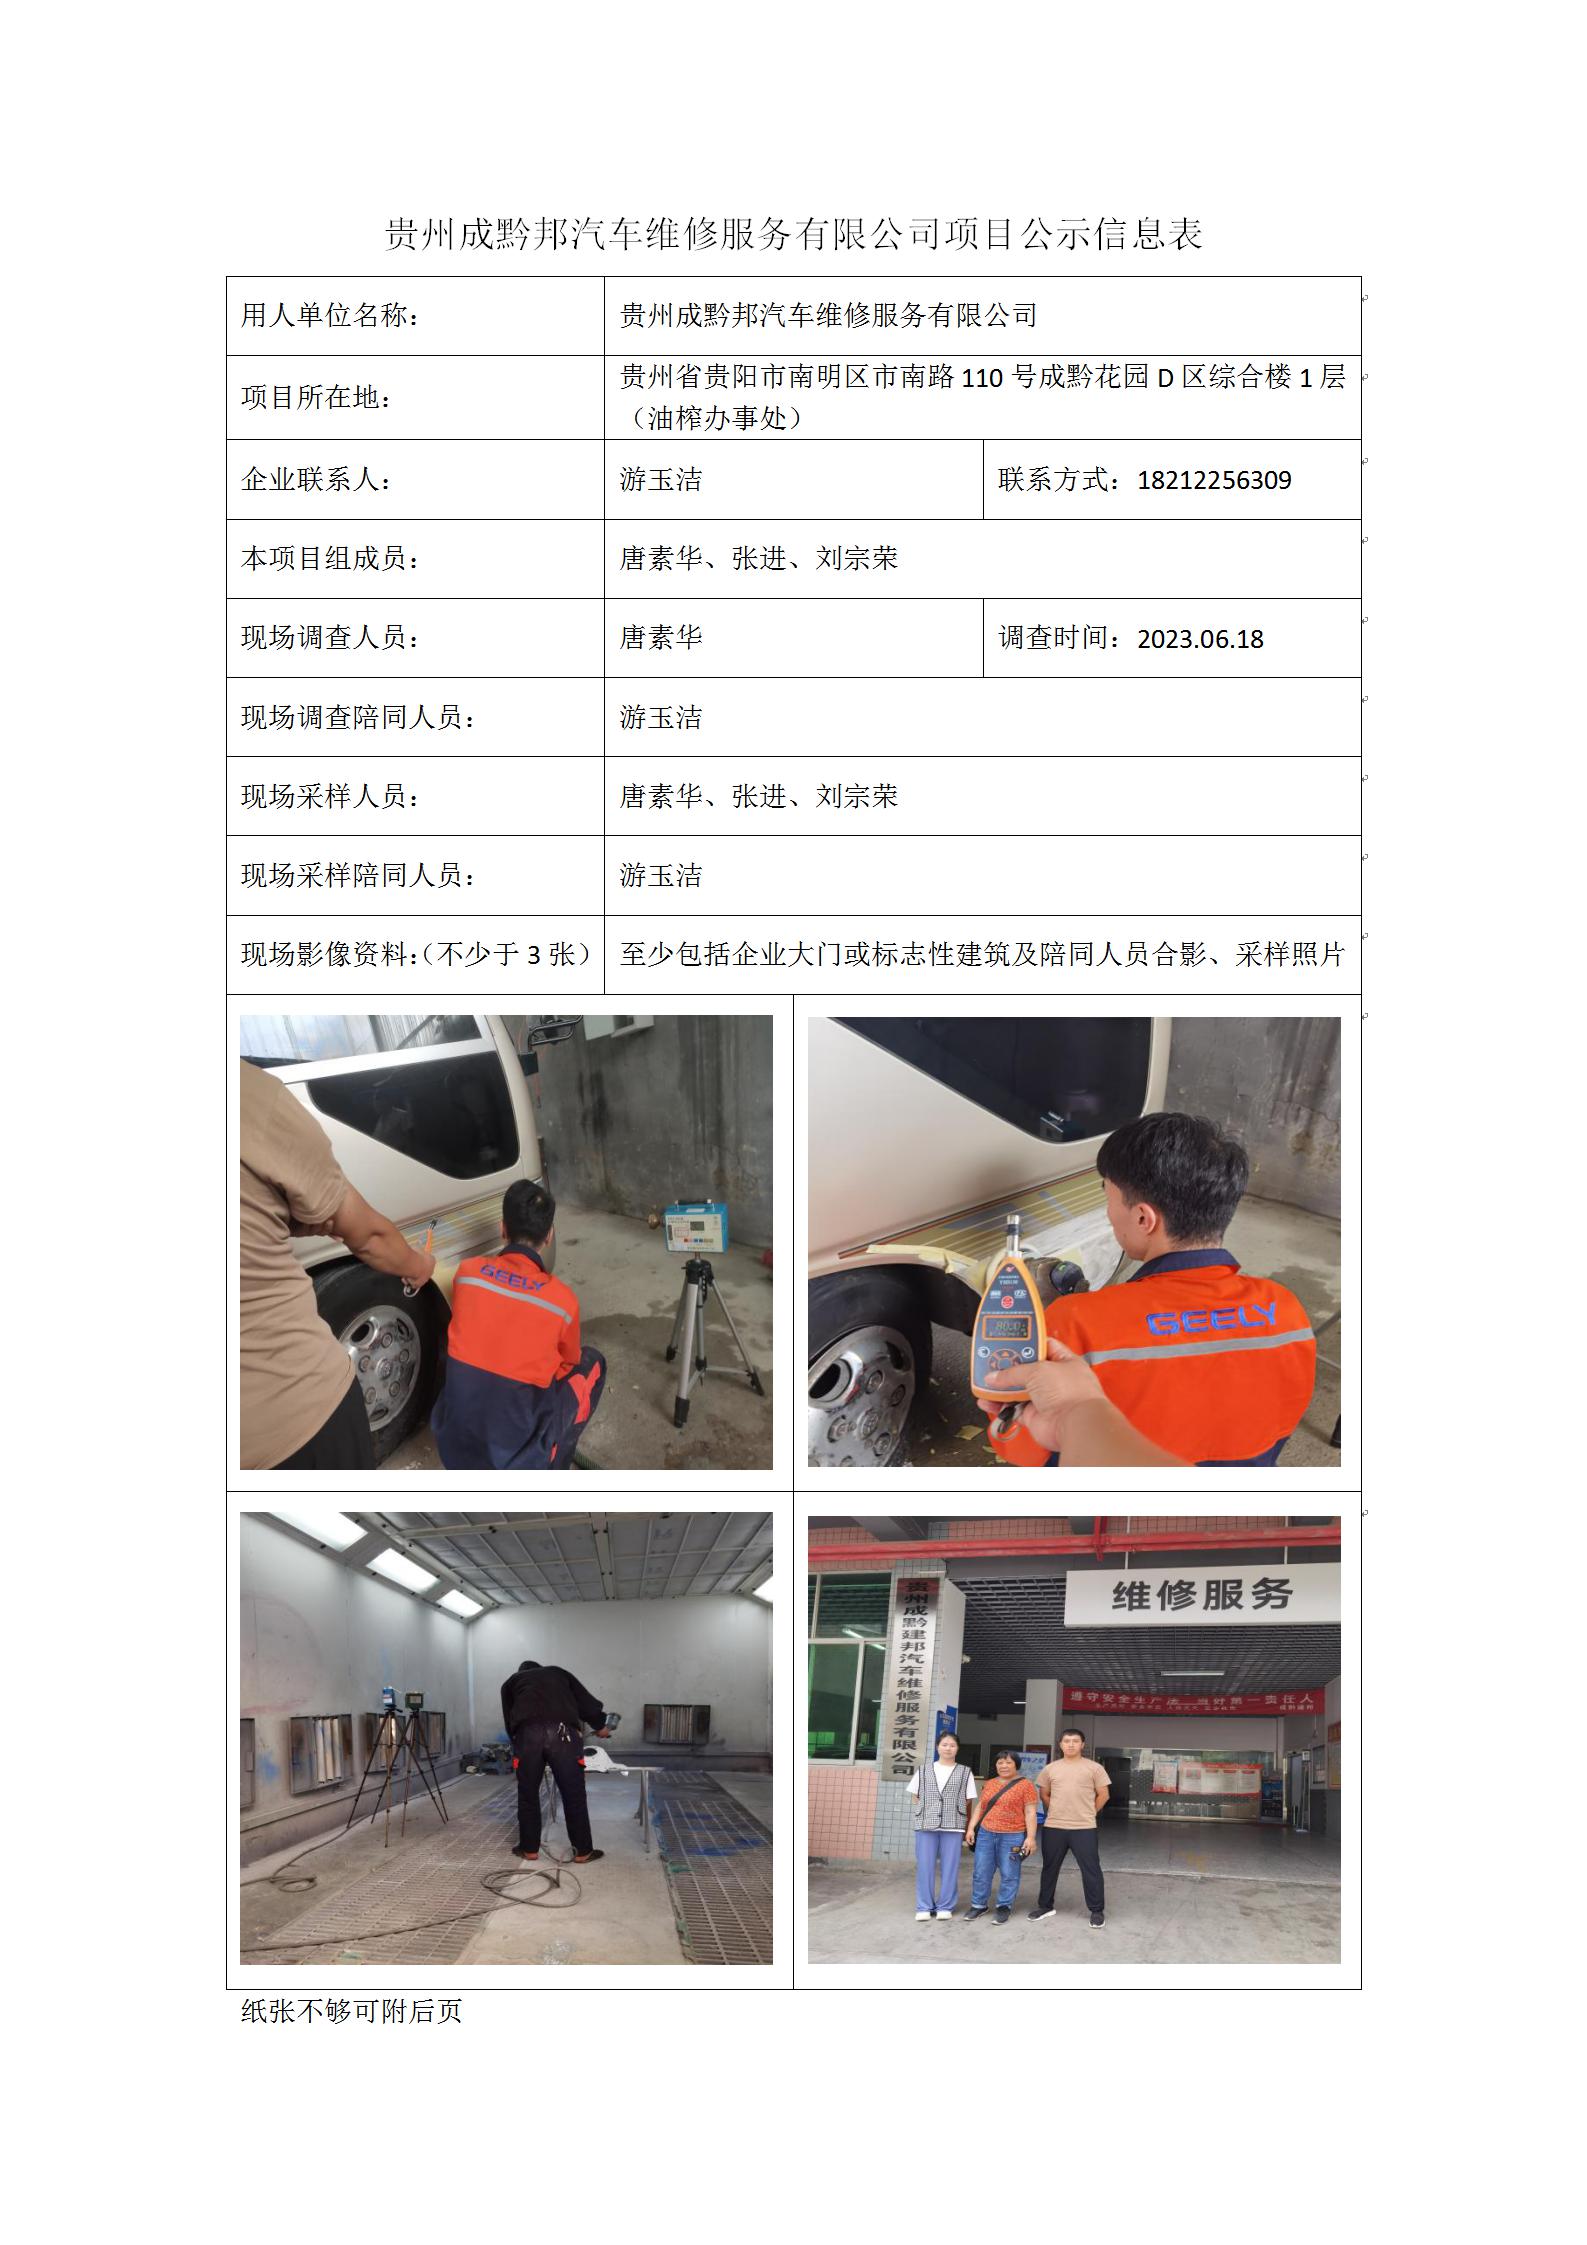 贵州成黔邦汽车维修服务有限公司项目公示信息表_01.jpg